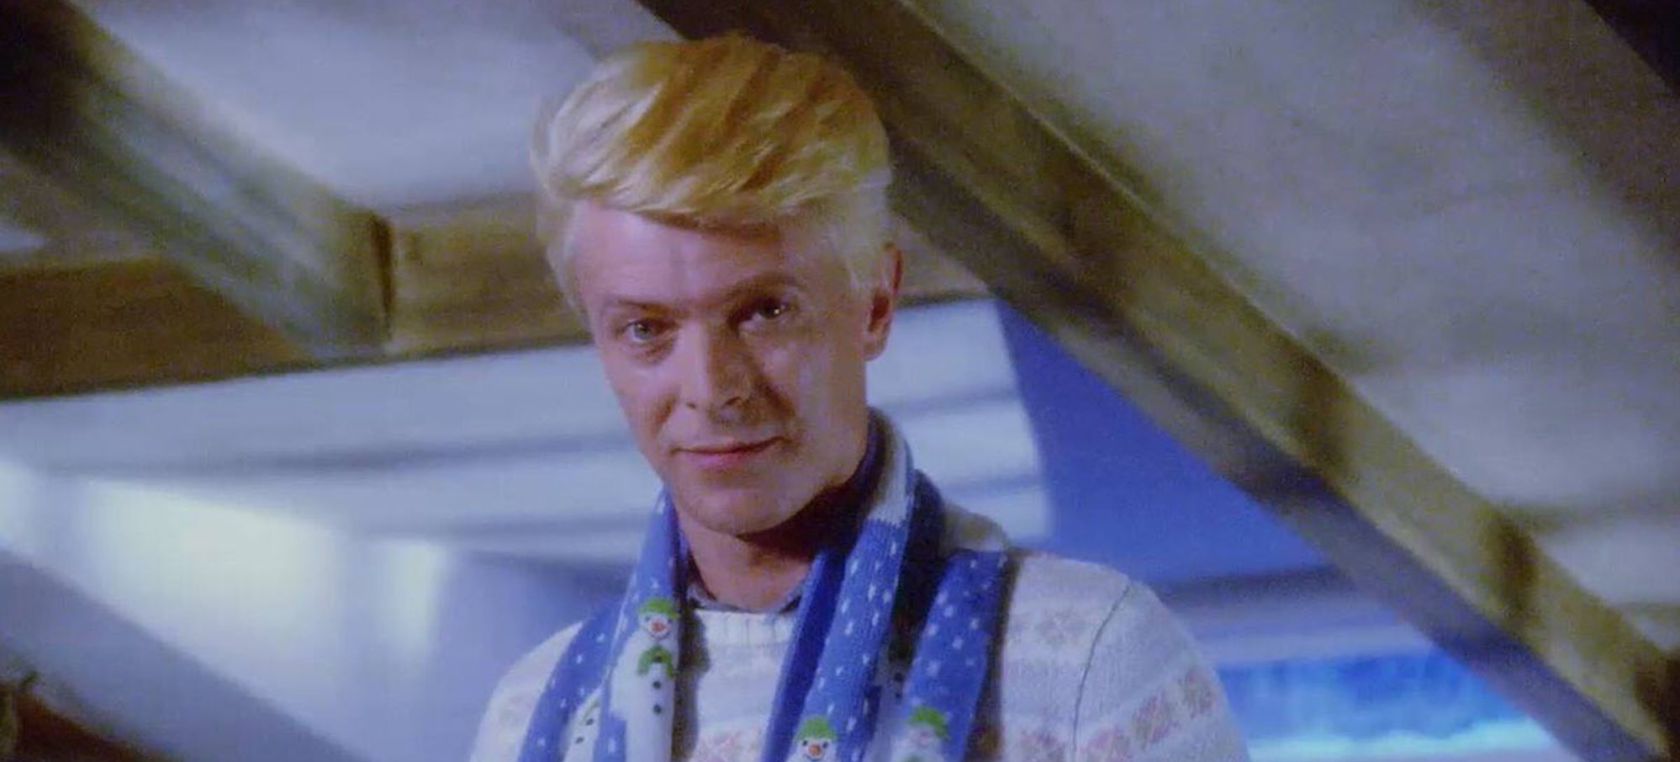 La conmovedora historia de la bufanda navideña de David Bowie en 'The Snowman'